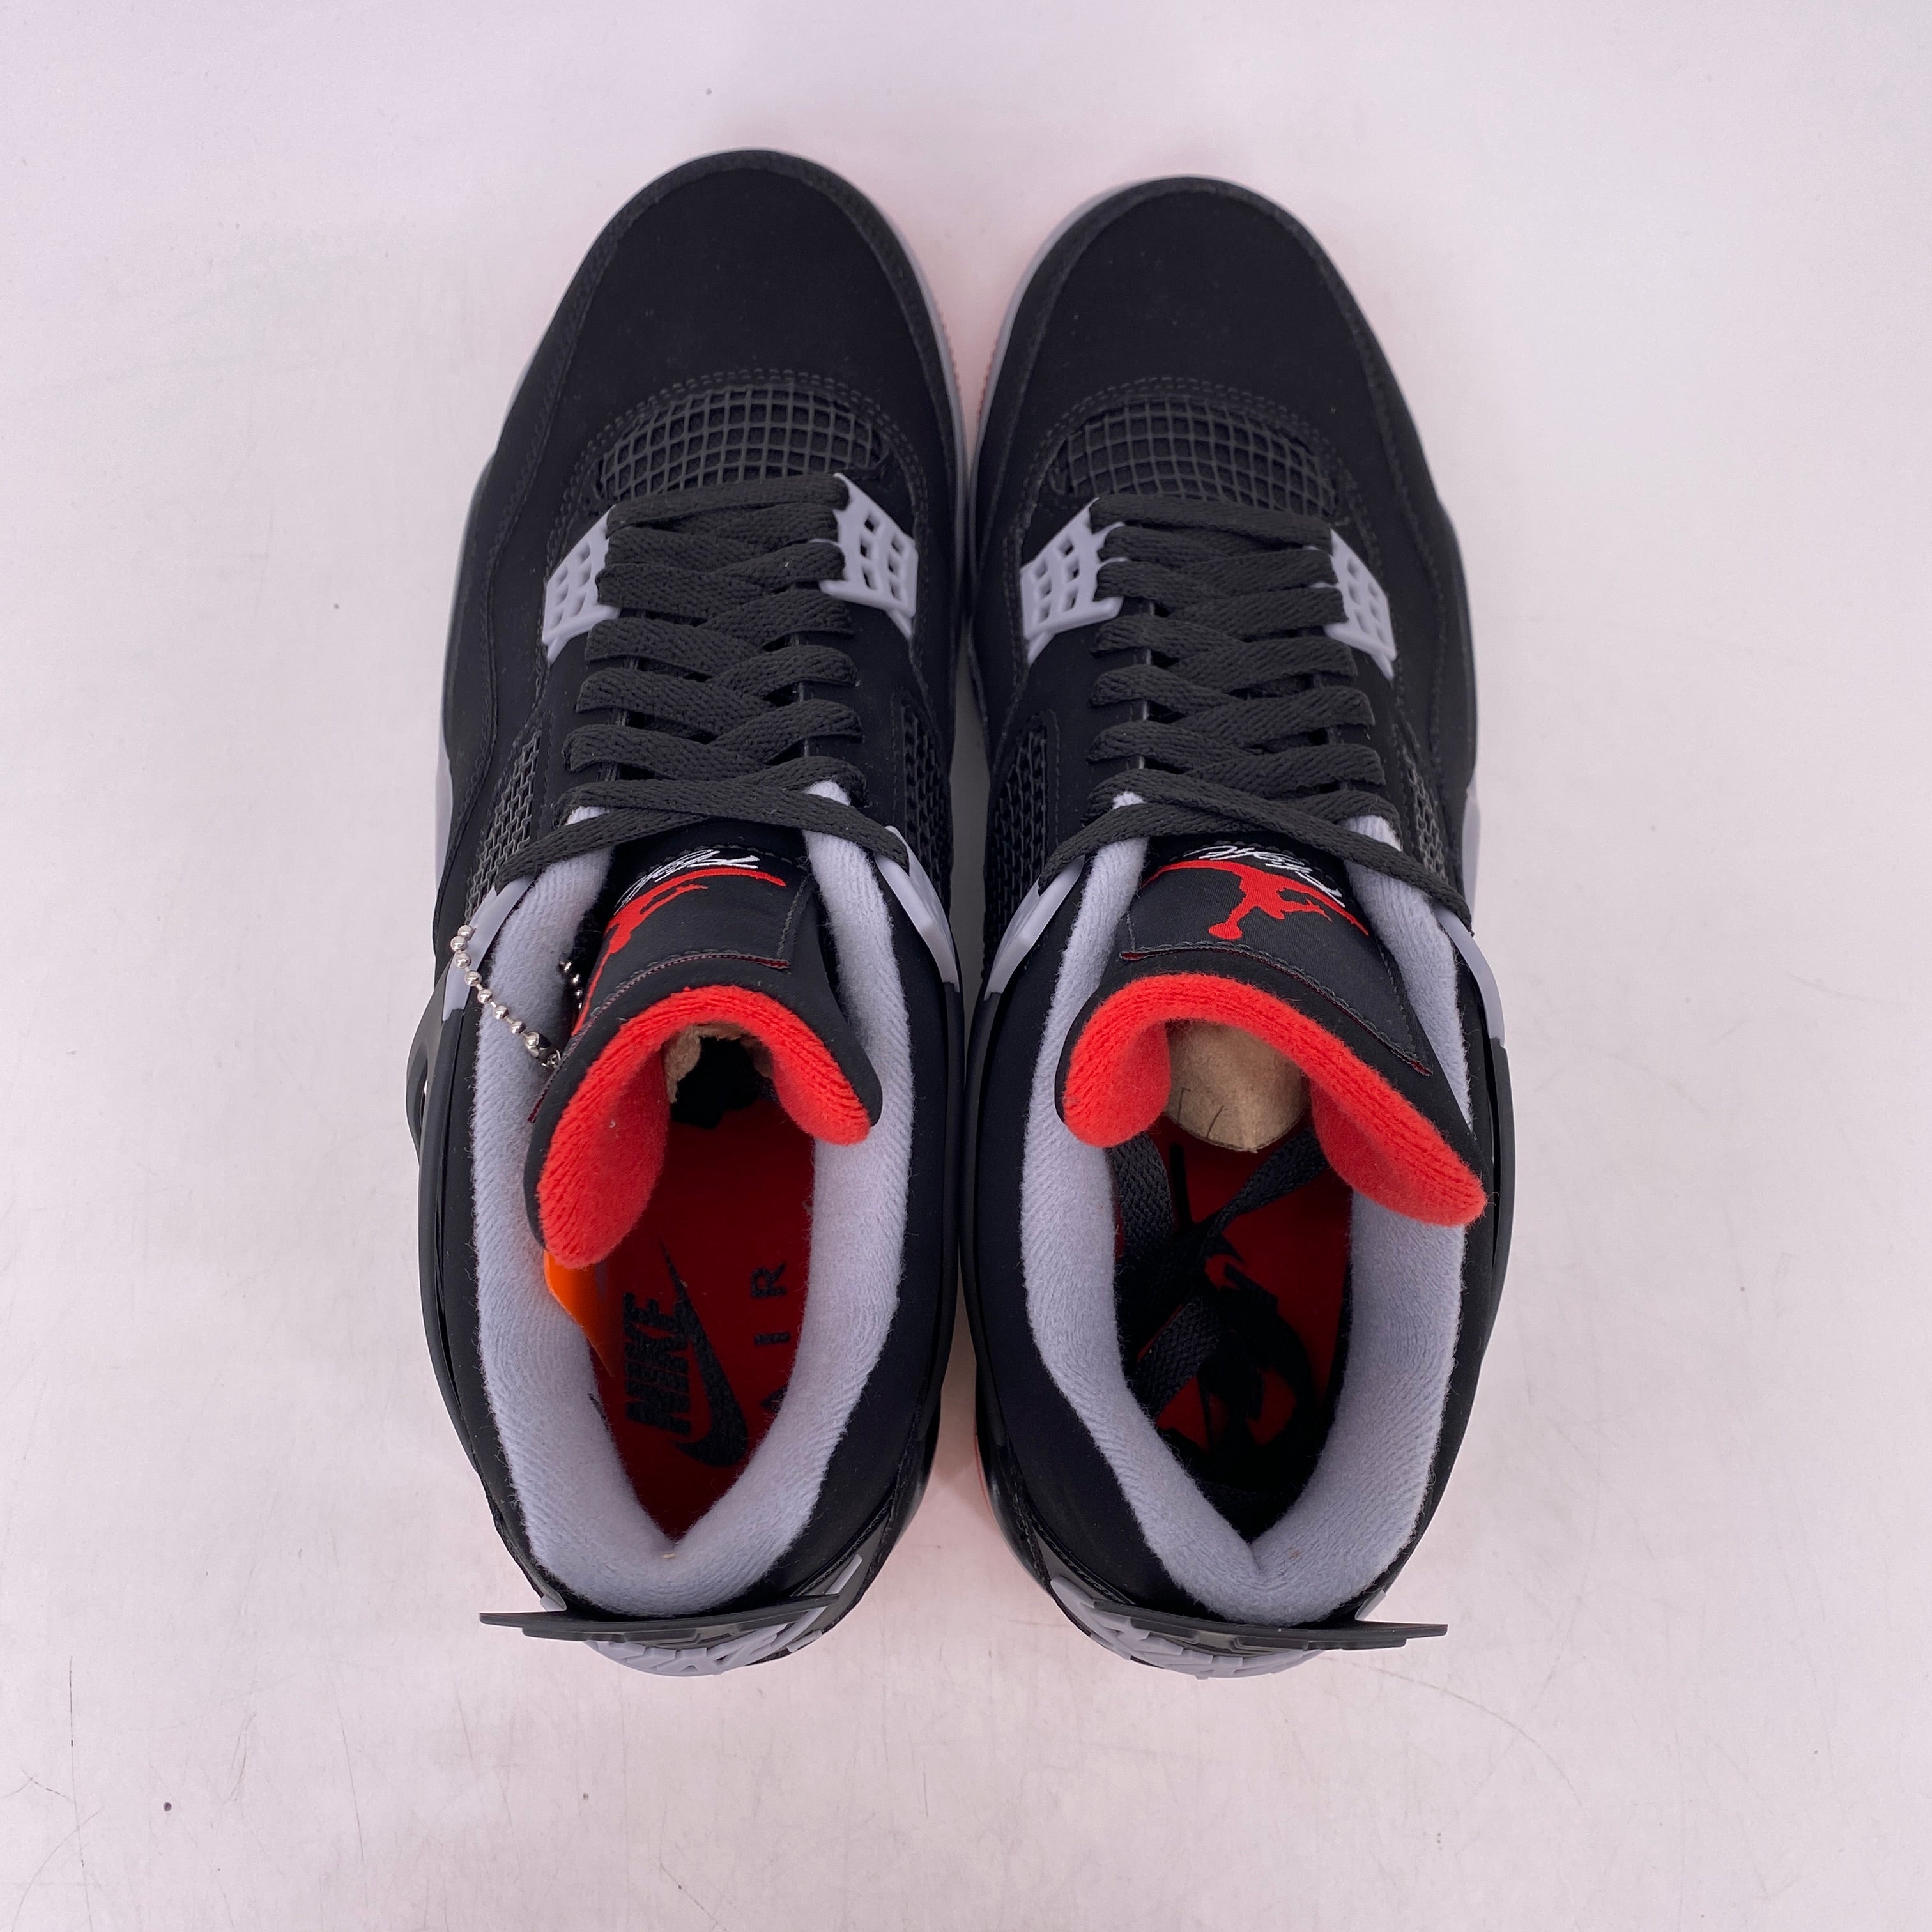 Air Jordan 4 Retro &quot;Bred&quot; 2019 New Size 10.5